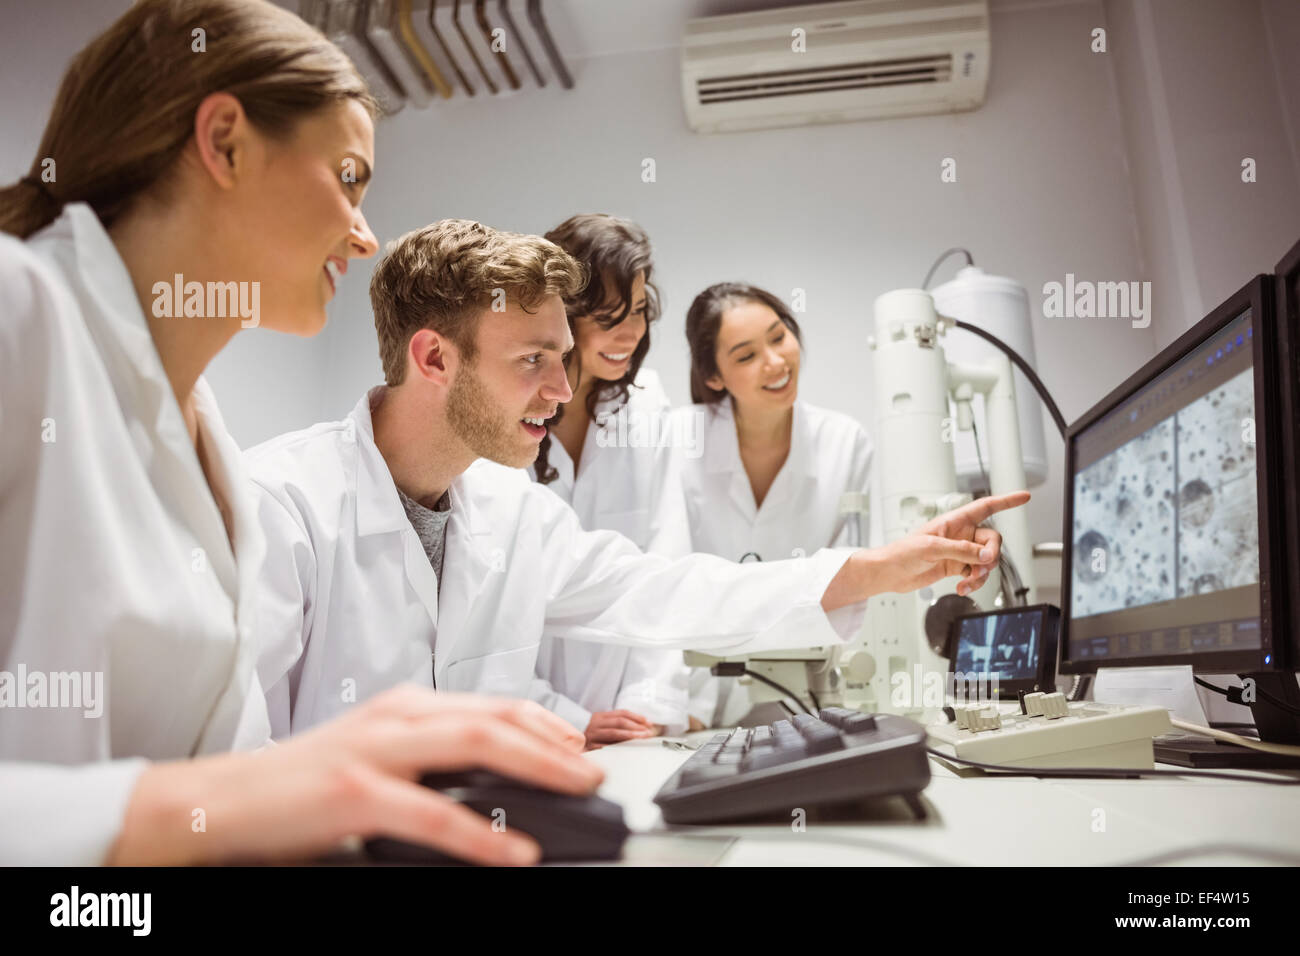 Los estudiantes de ciencias mirando imagen microscópica en el equipo Foto de stock